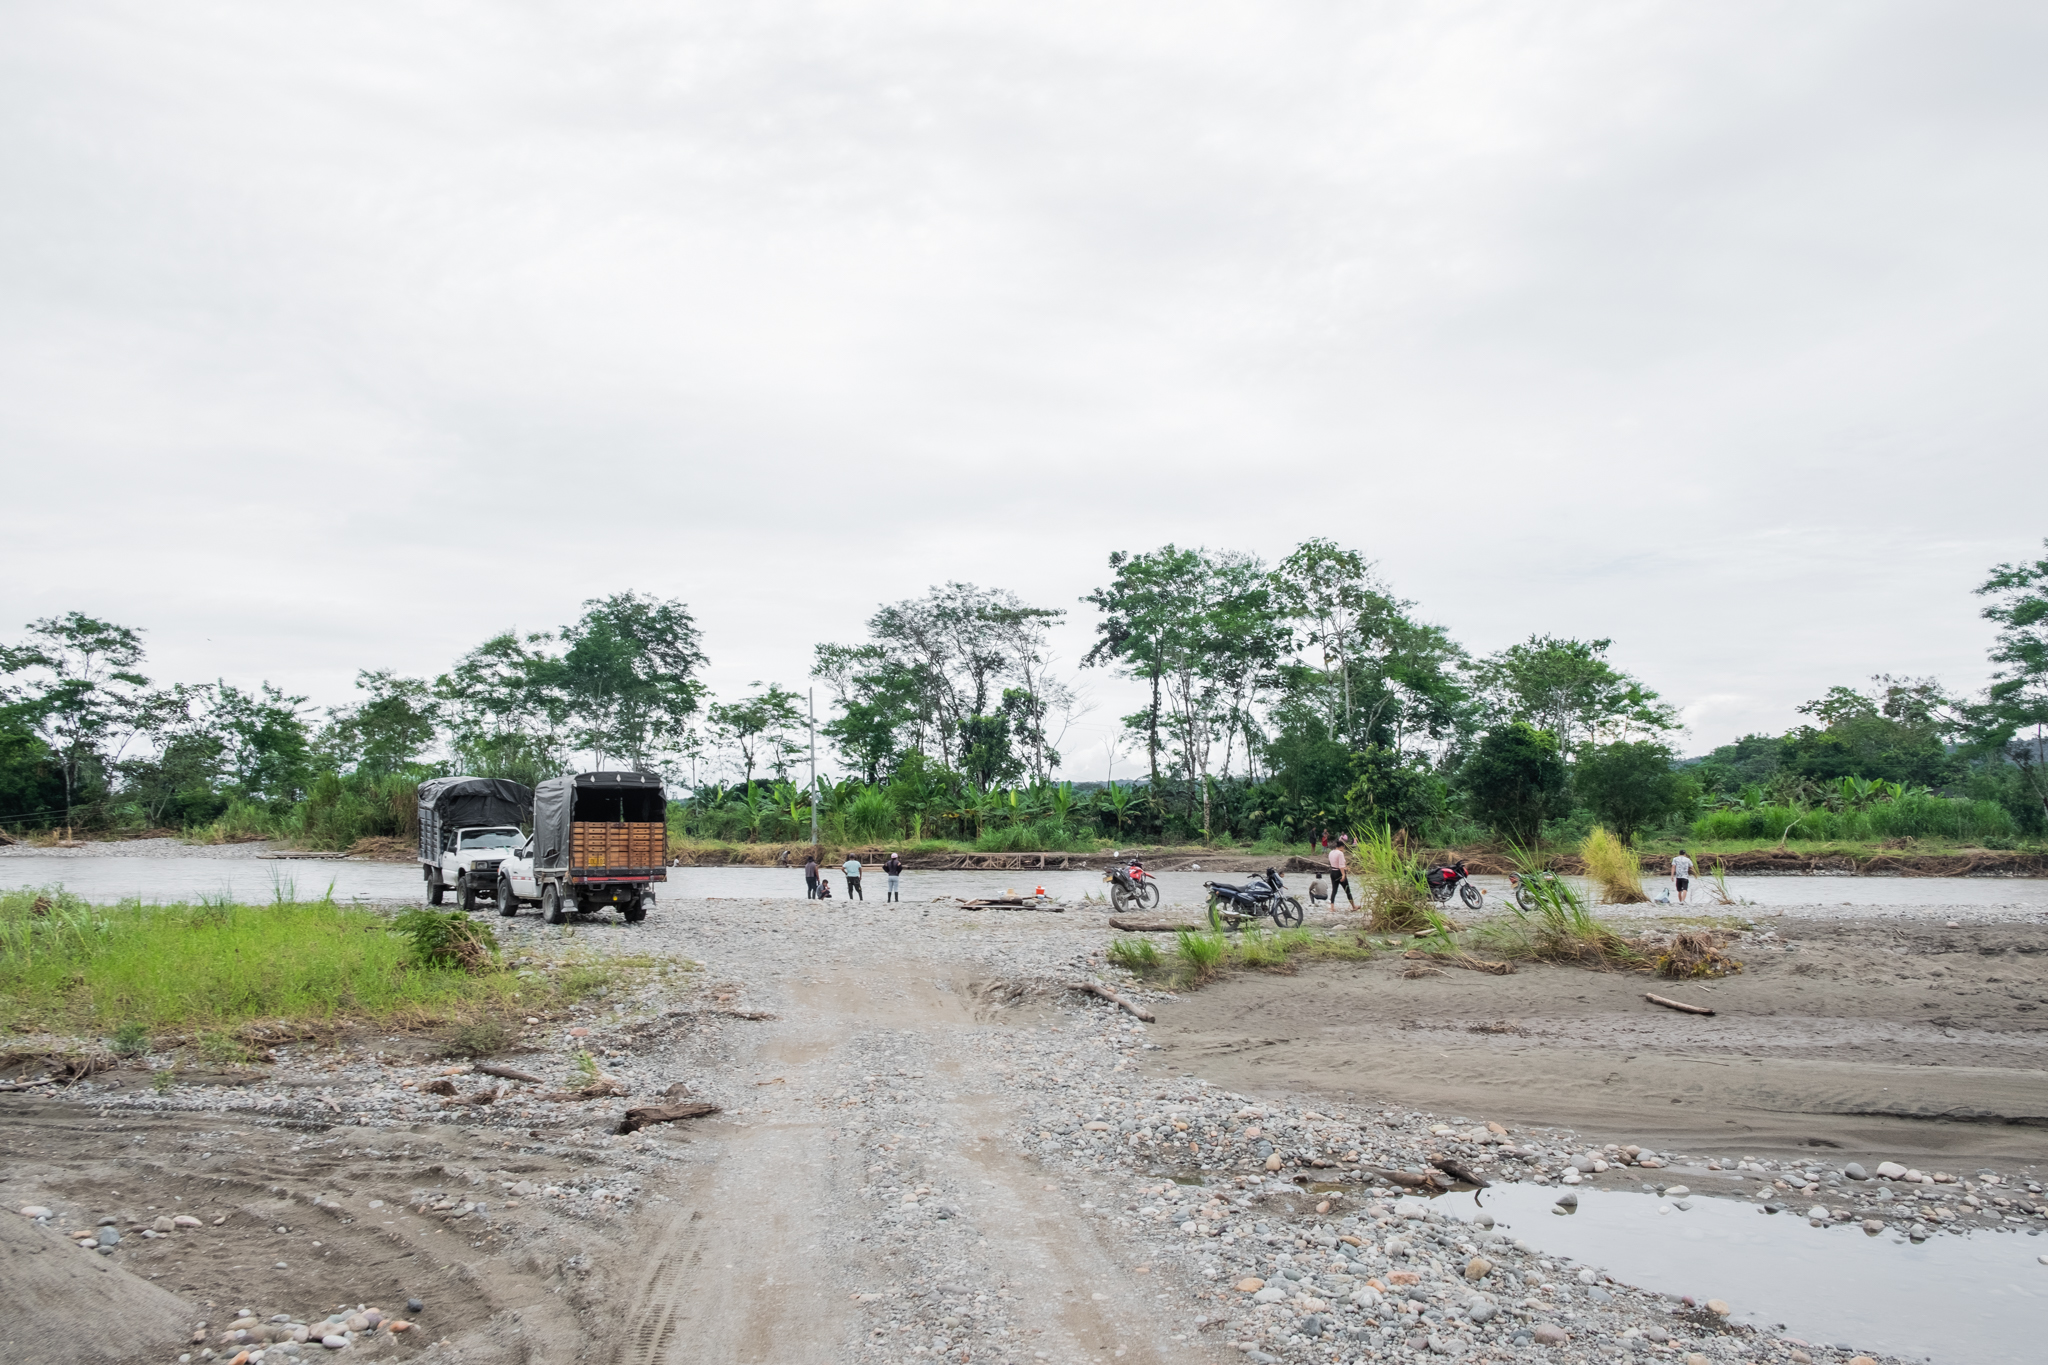 El camino de tierra sobre el que se construirá la Carretera Marginal de la Selva llega a su fin frente al río Caquetá, Piamonte, Cauca. Foto: Sergio Alejandro Melgarejo.